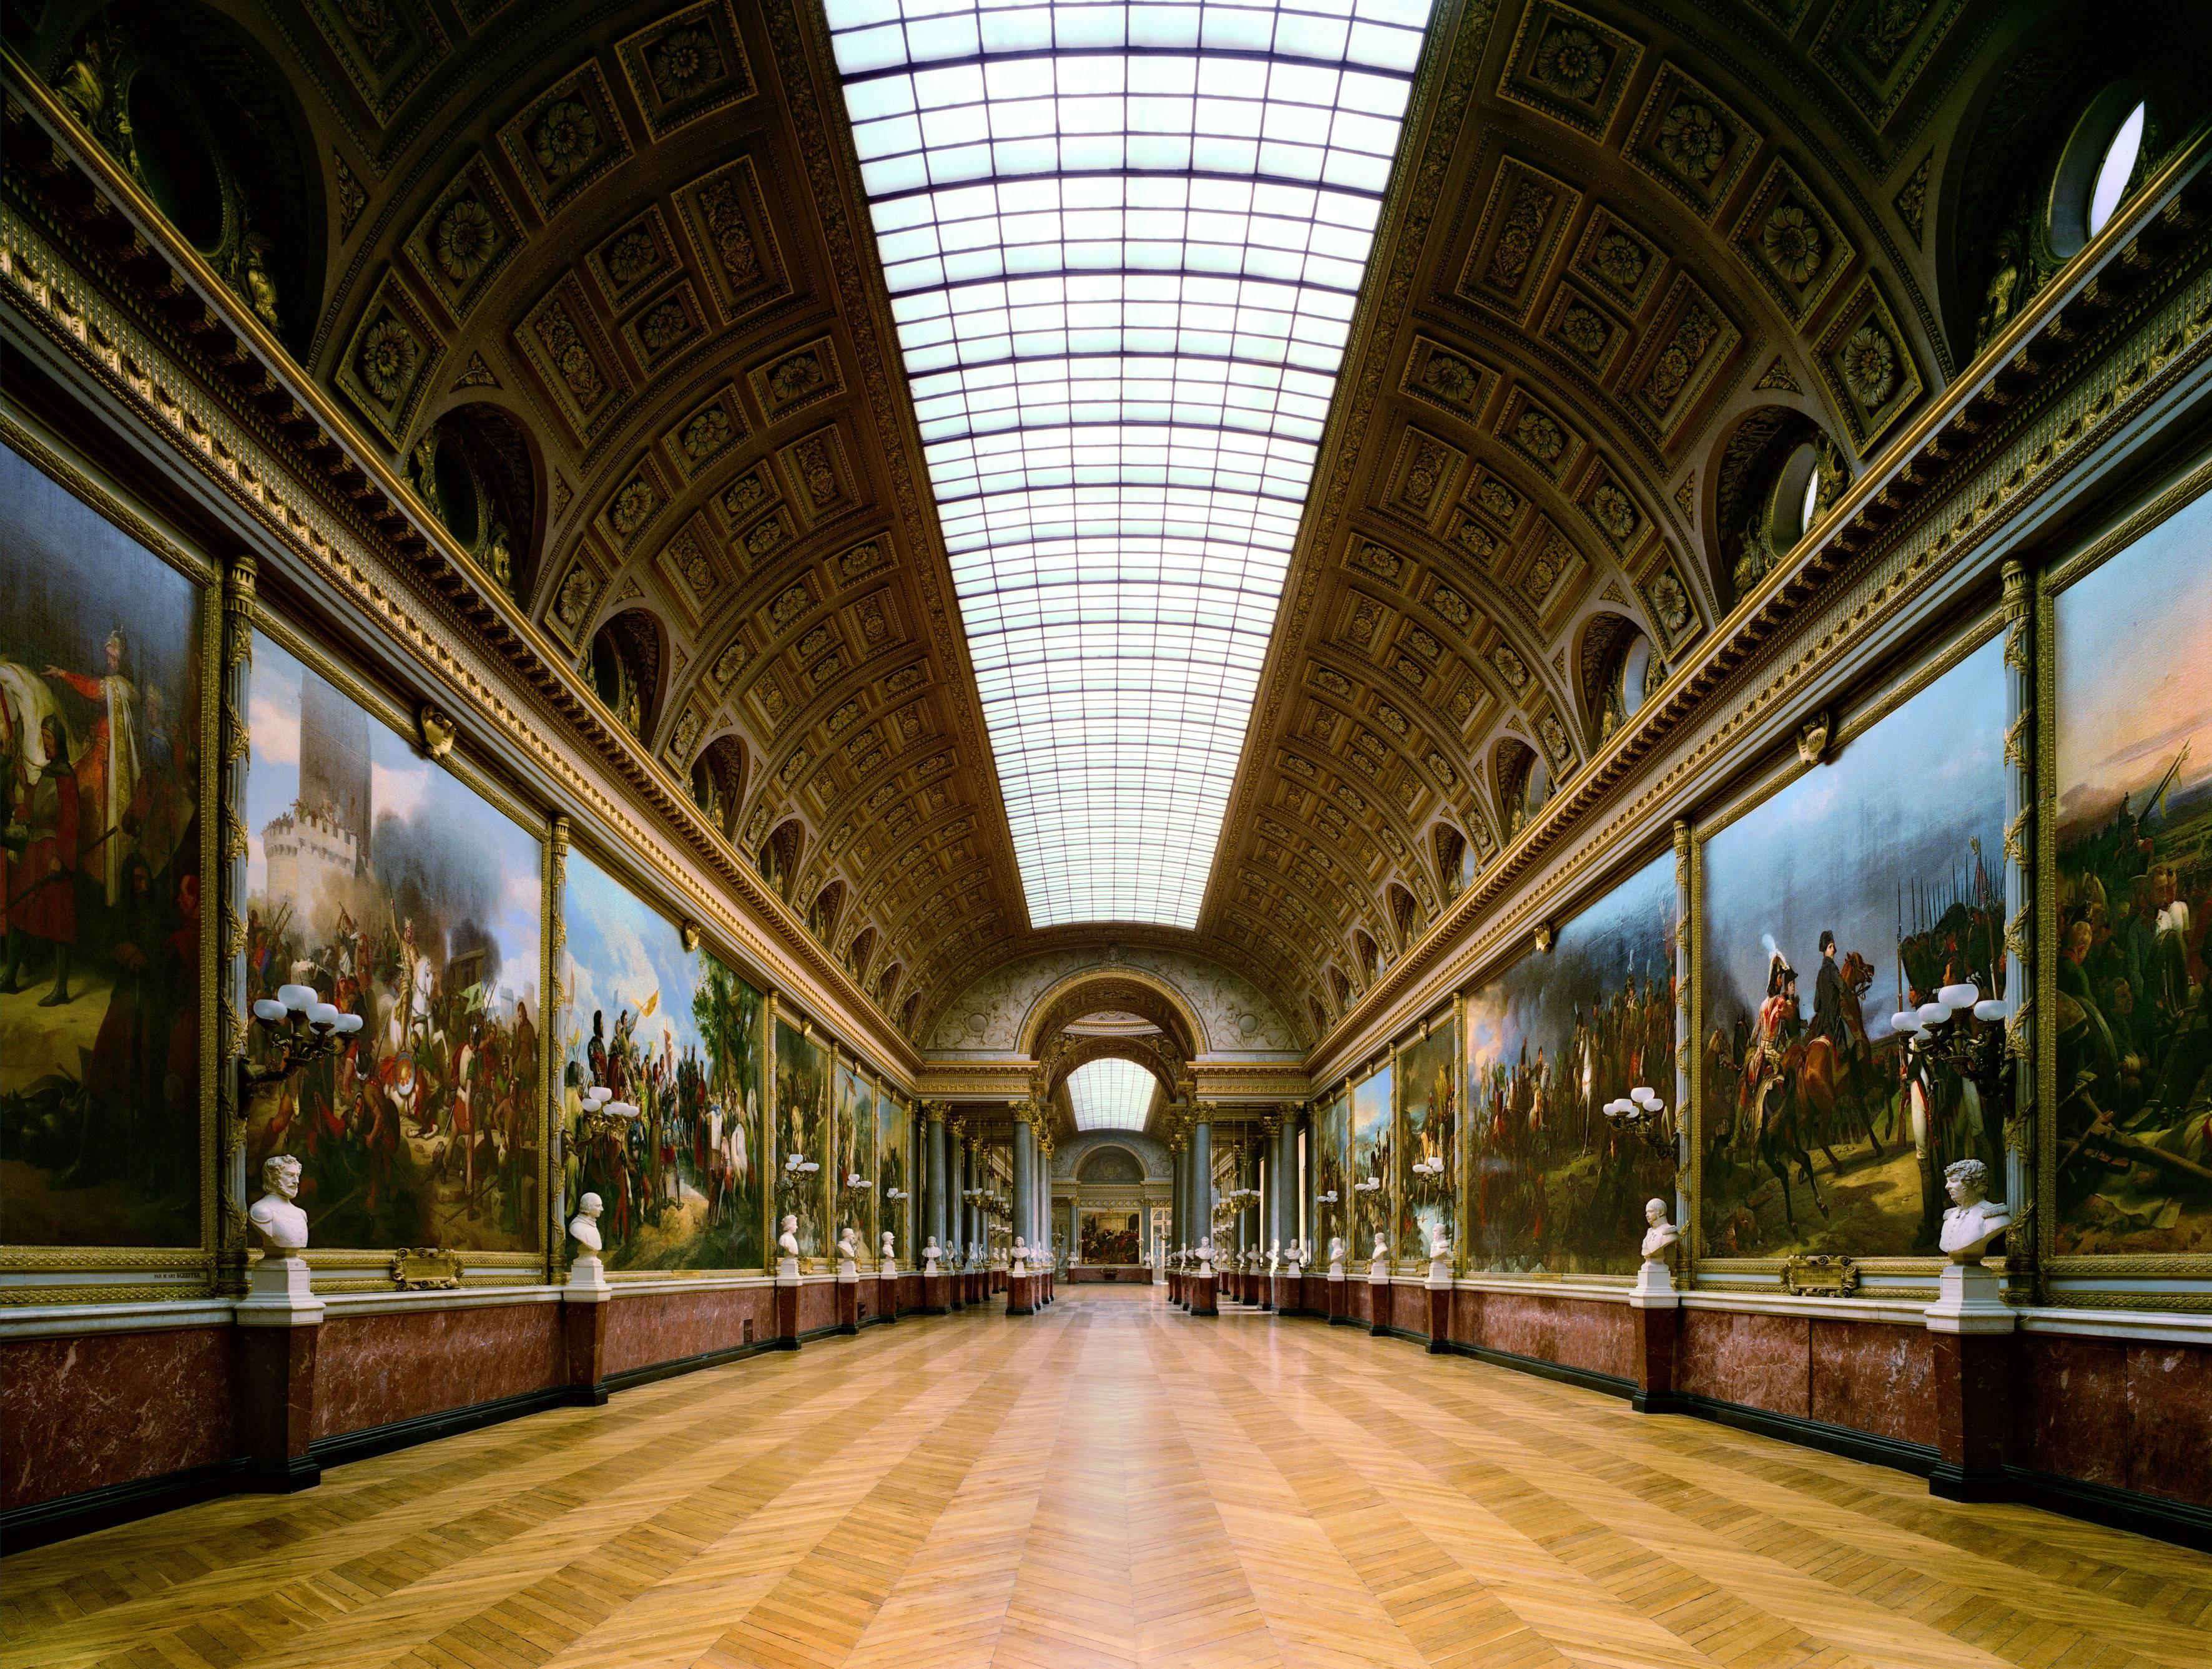 Gallery of Battles, Chateau de Versailles, Paris/France